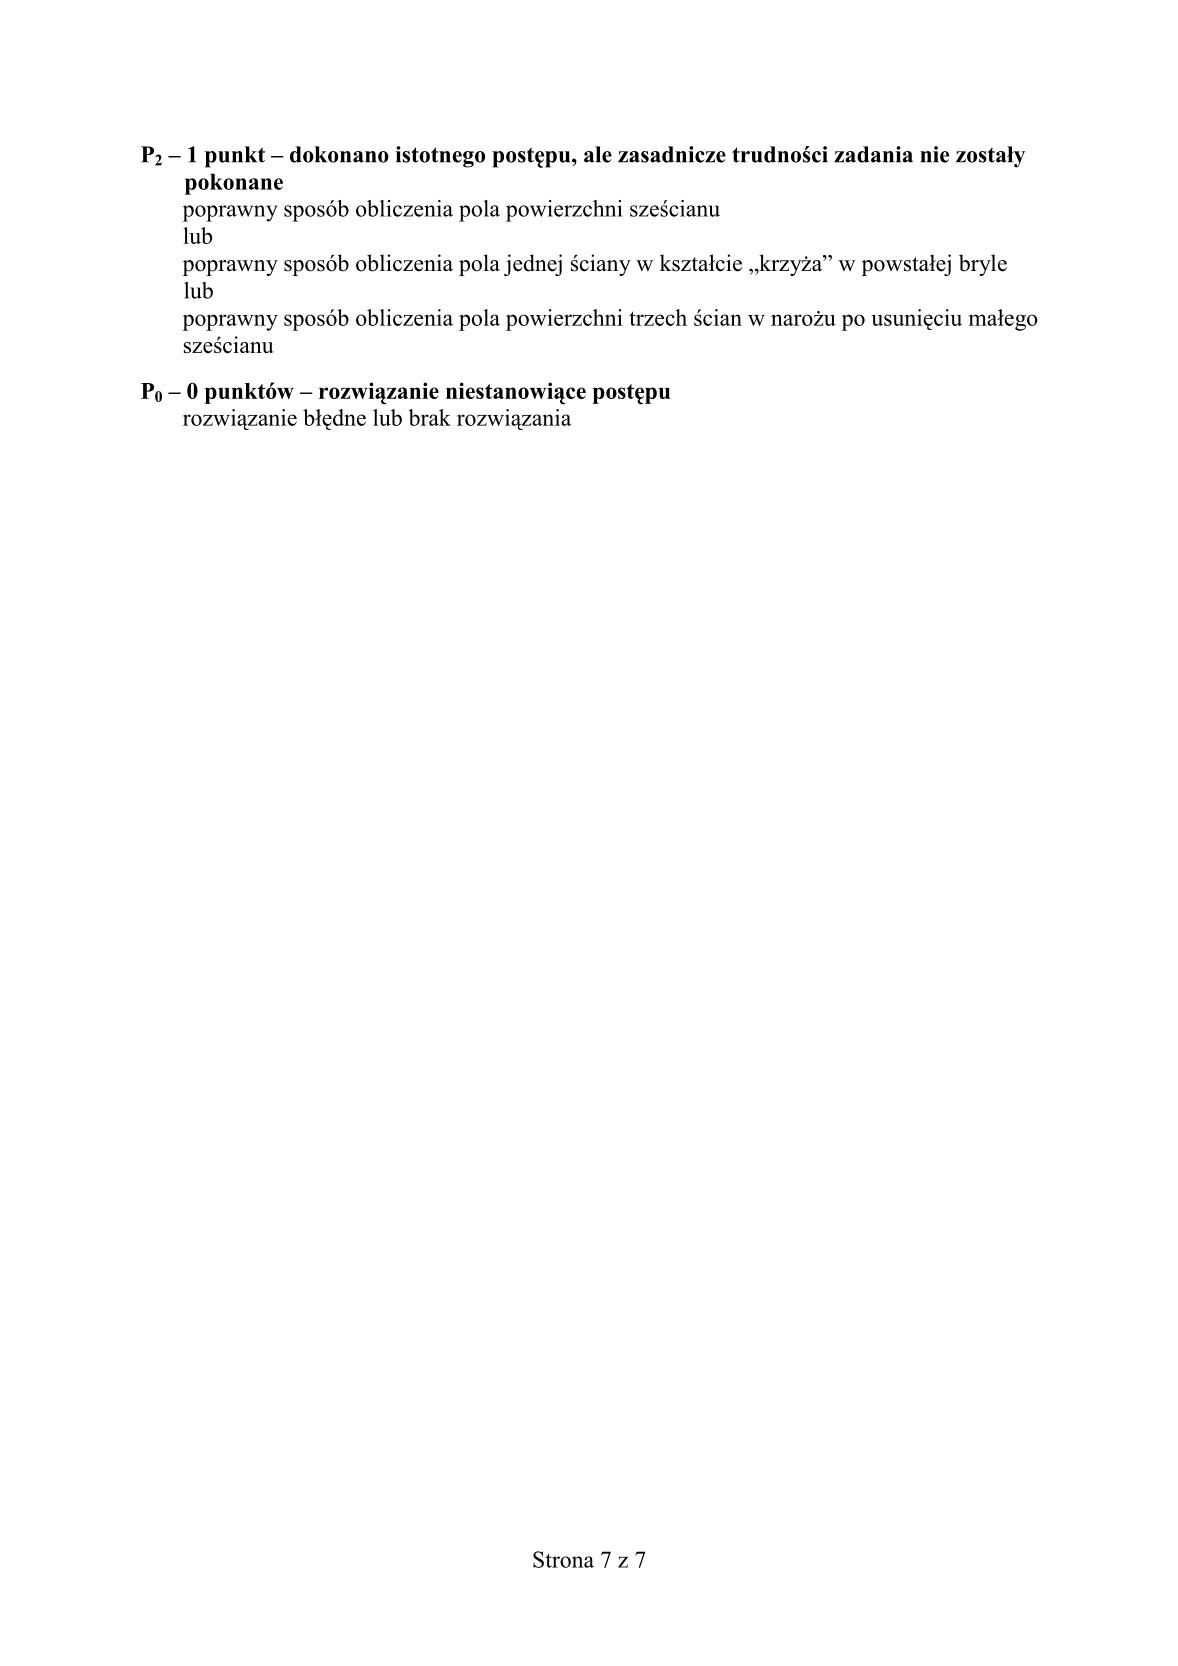 odpowiedzi-matematyka-egzamin-gimnazjalny-24.04.2014-str.7